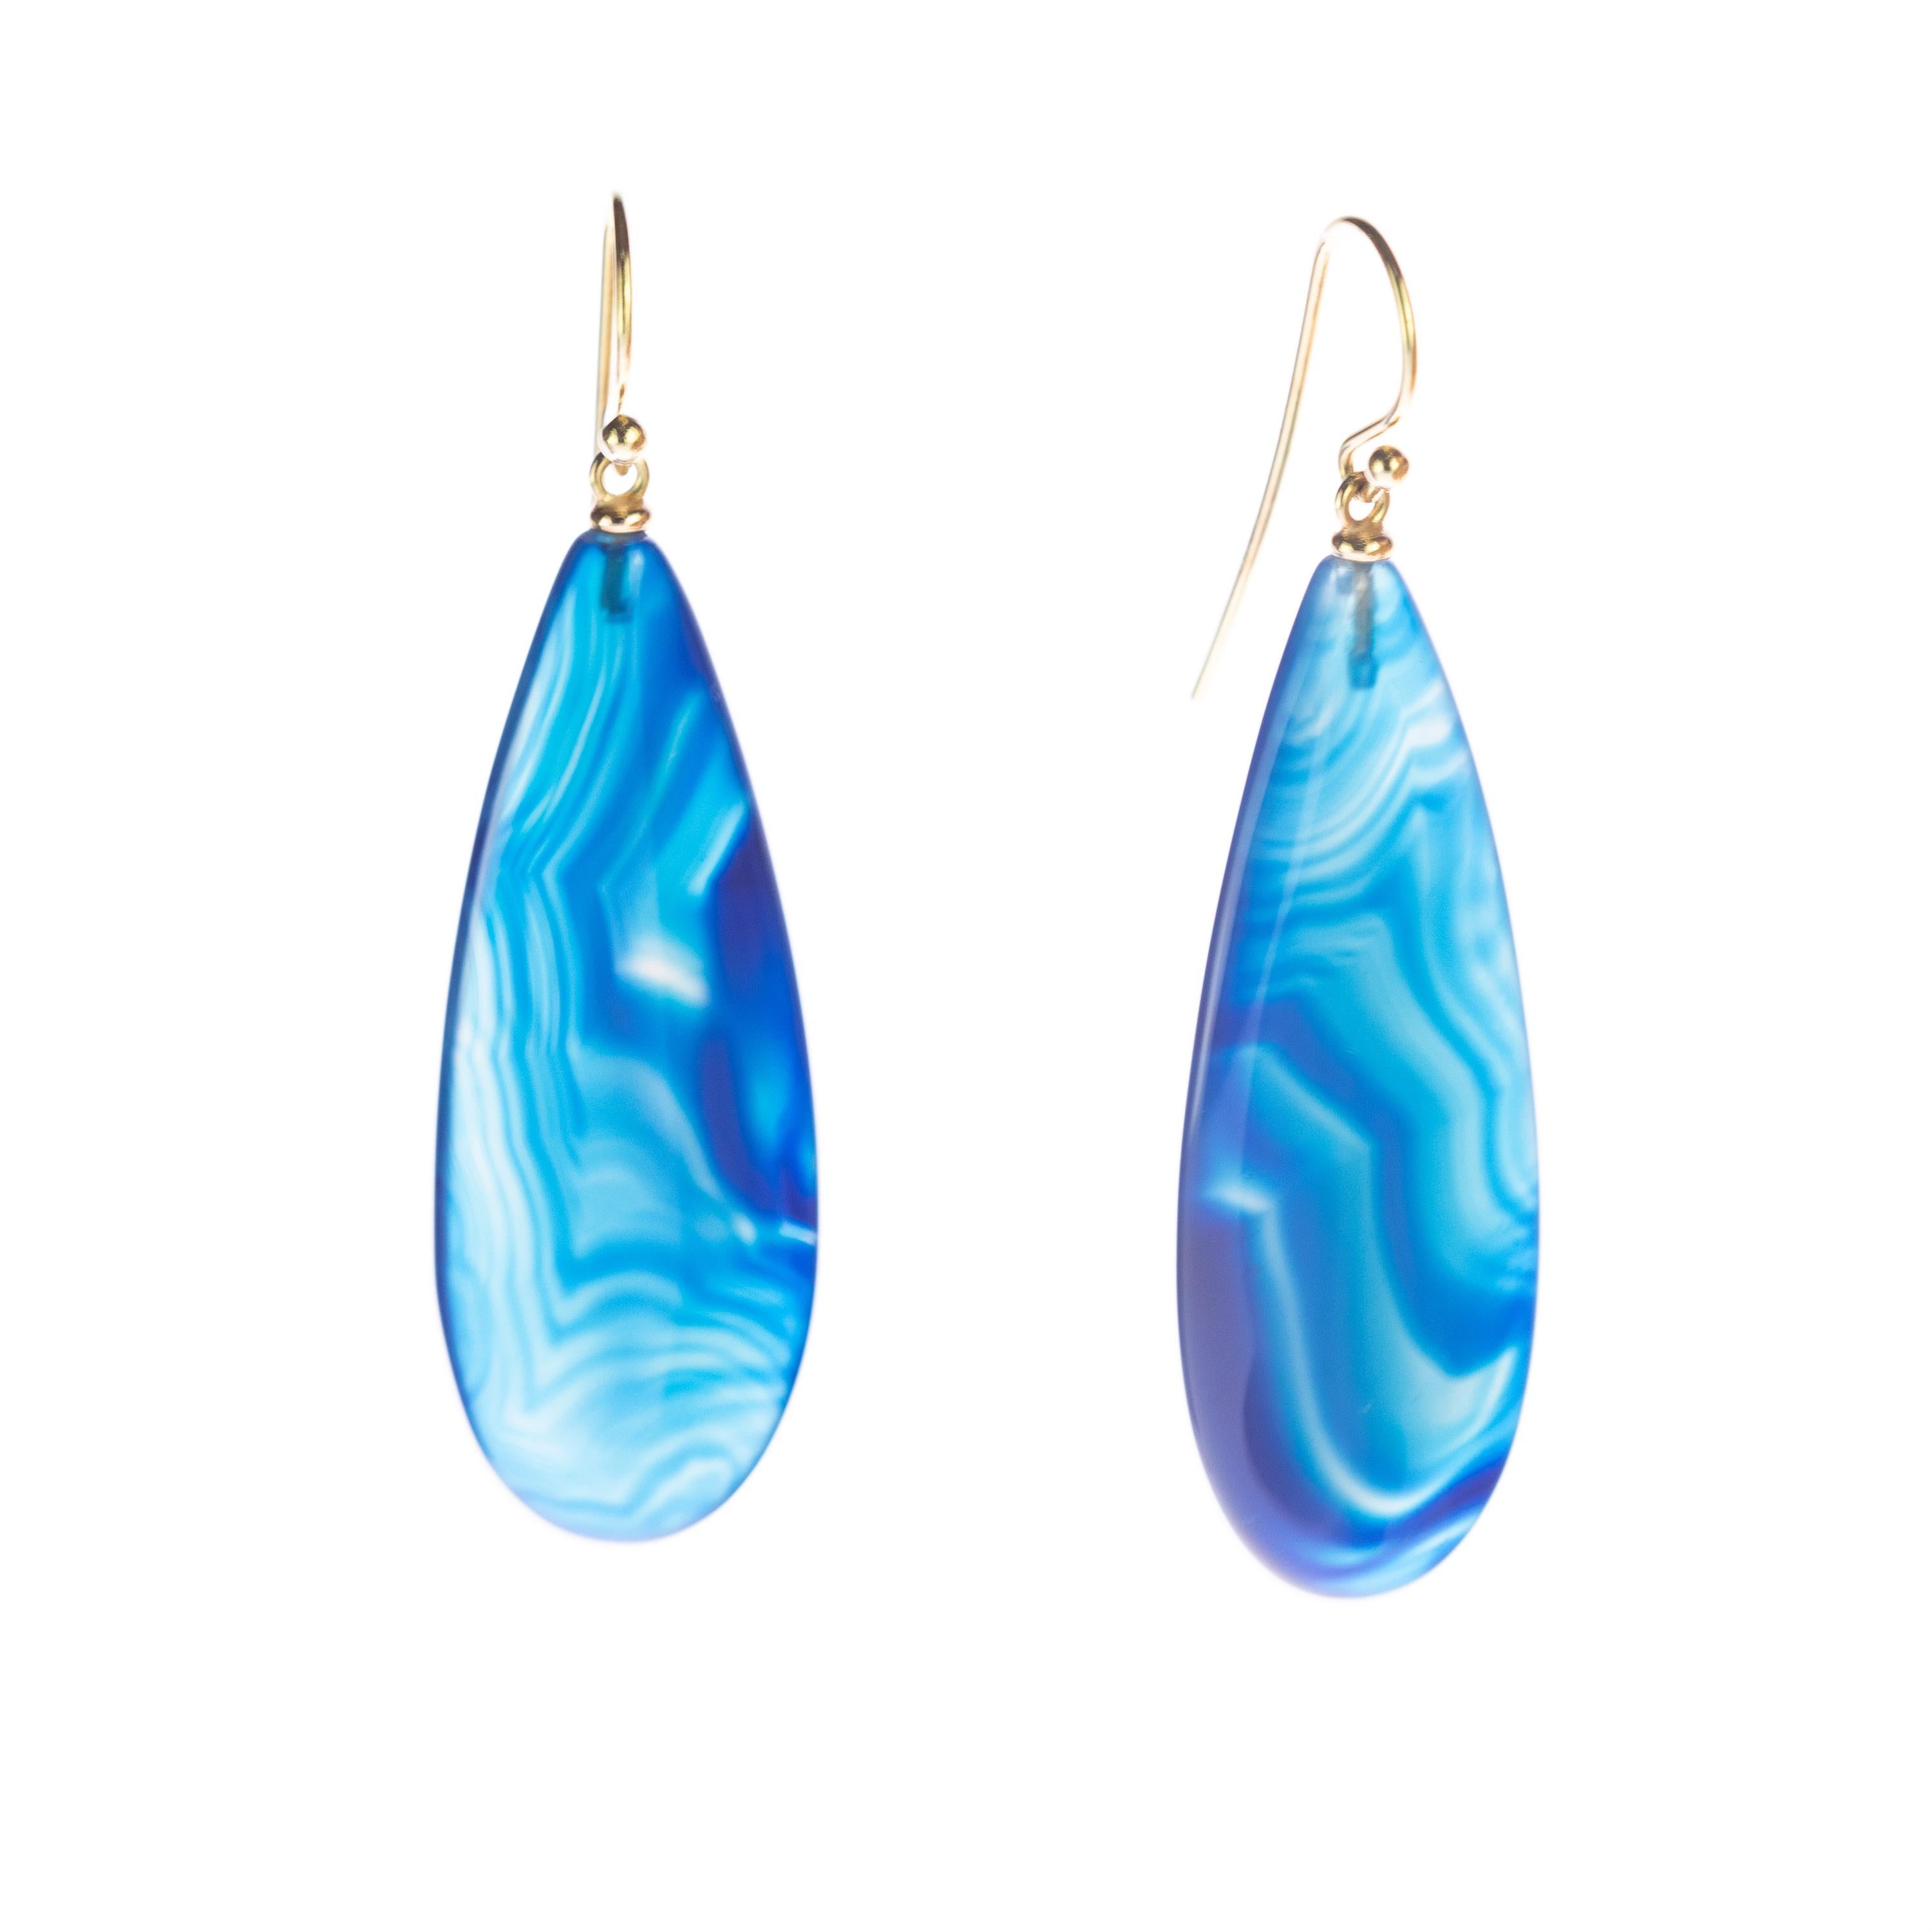 Briolette Cut Intini Jewels Light Blue Agate Tear Drop 18 Karat Gold Dangle Handmade Earrings For Sale